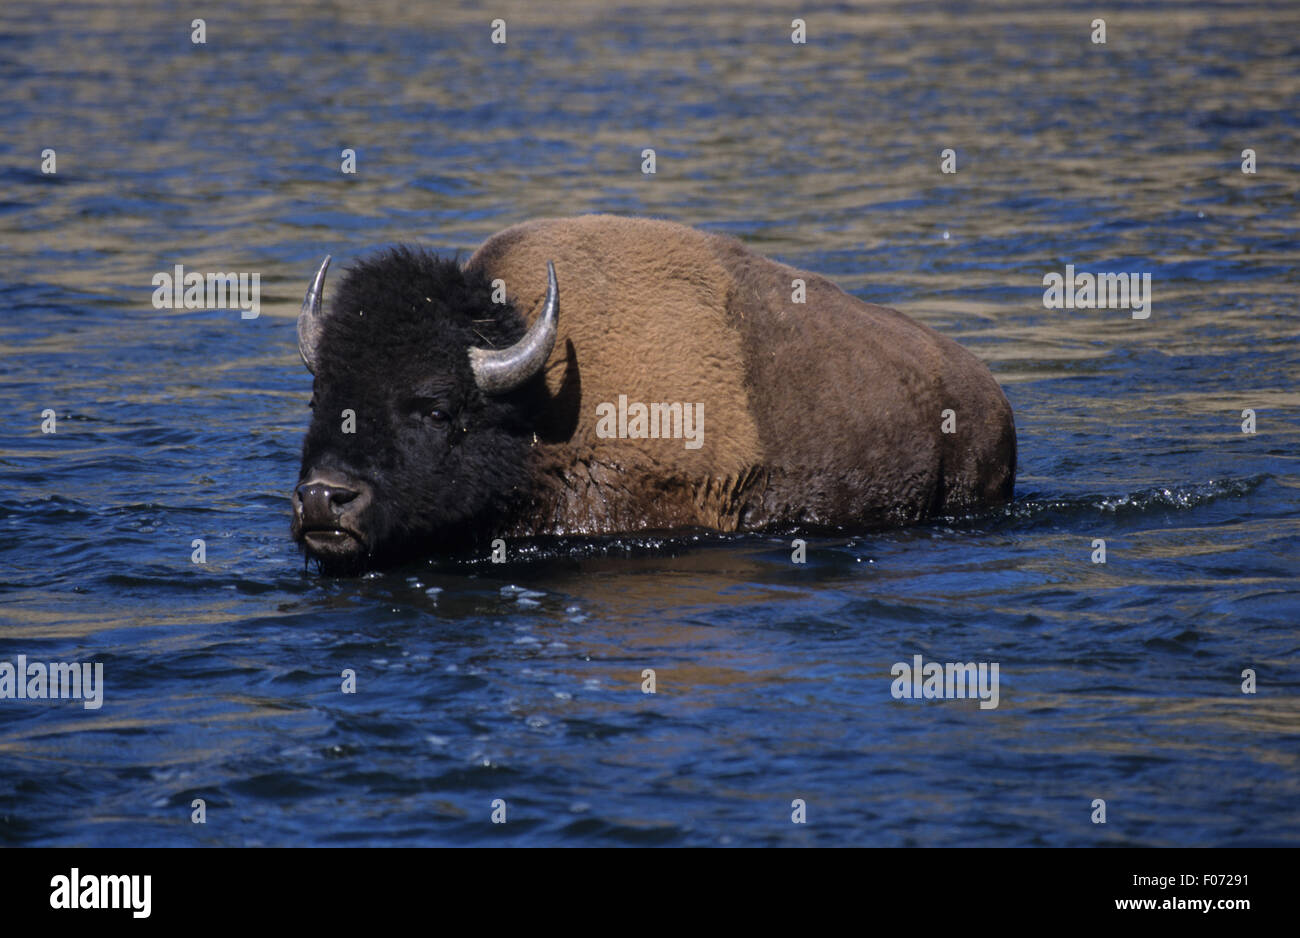 Bison taken in profile walking left through deep blue water Stock Photo